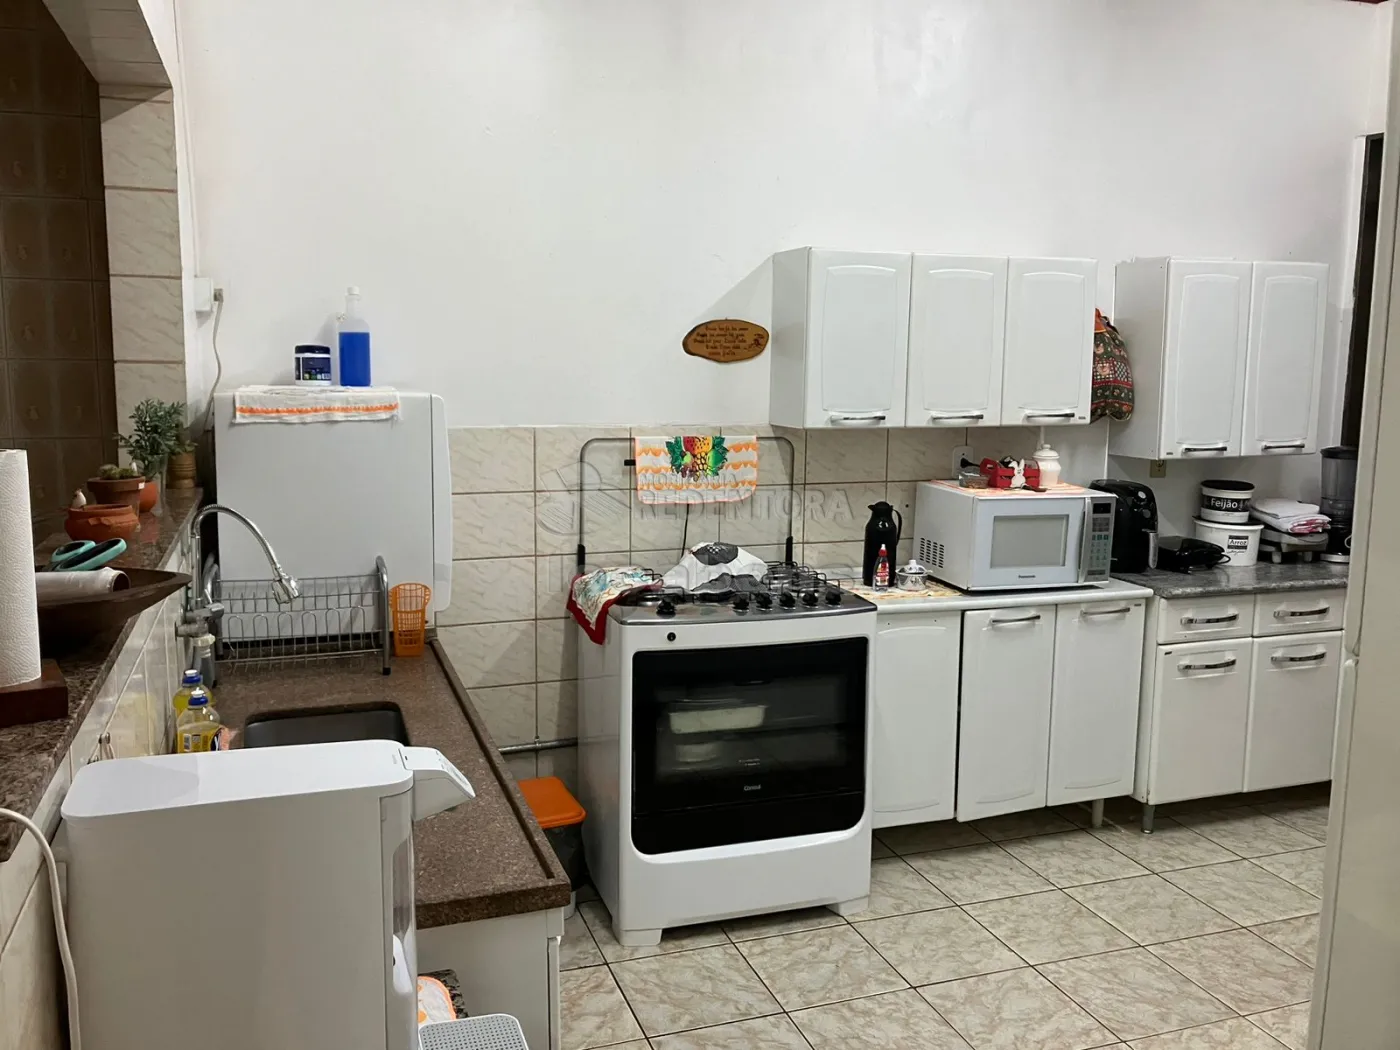 Comprar Casa / Padrão em São José do Rio Preto R$ 400.000,00 - Foto 14